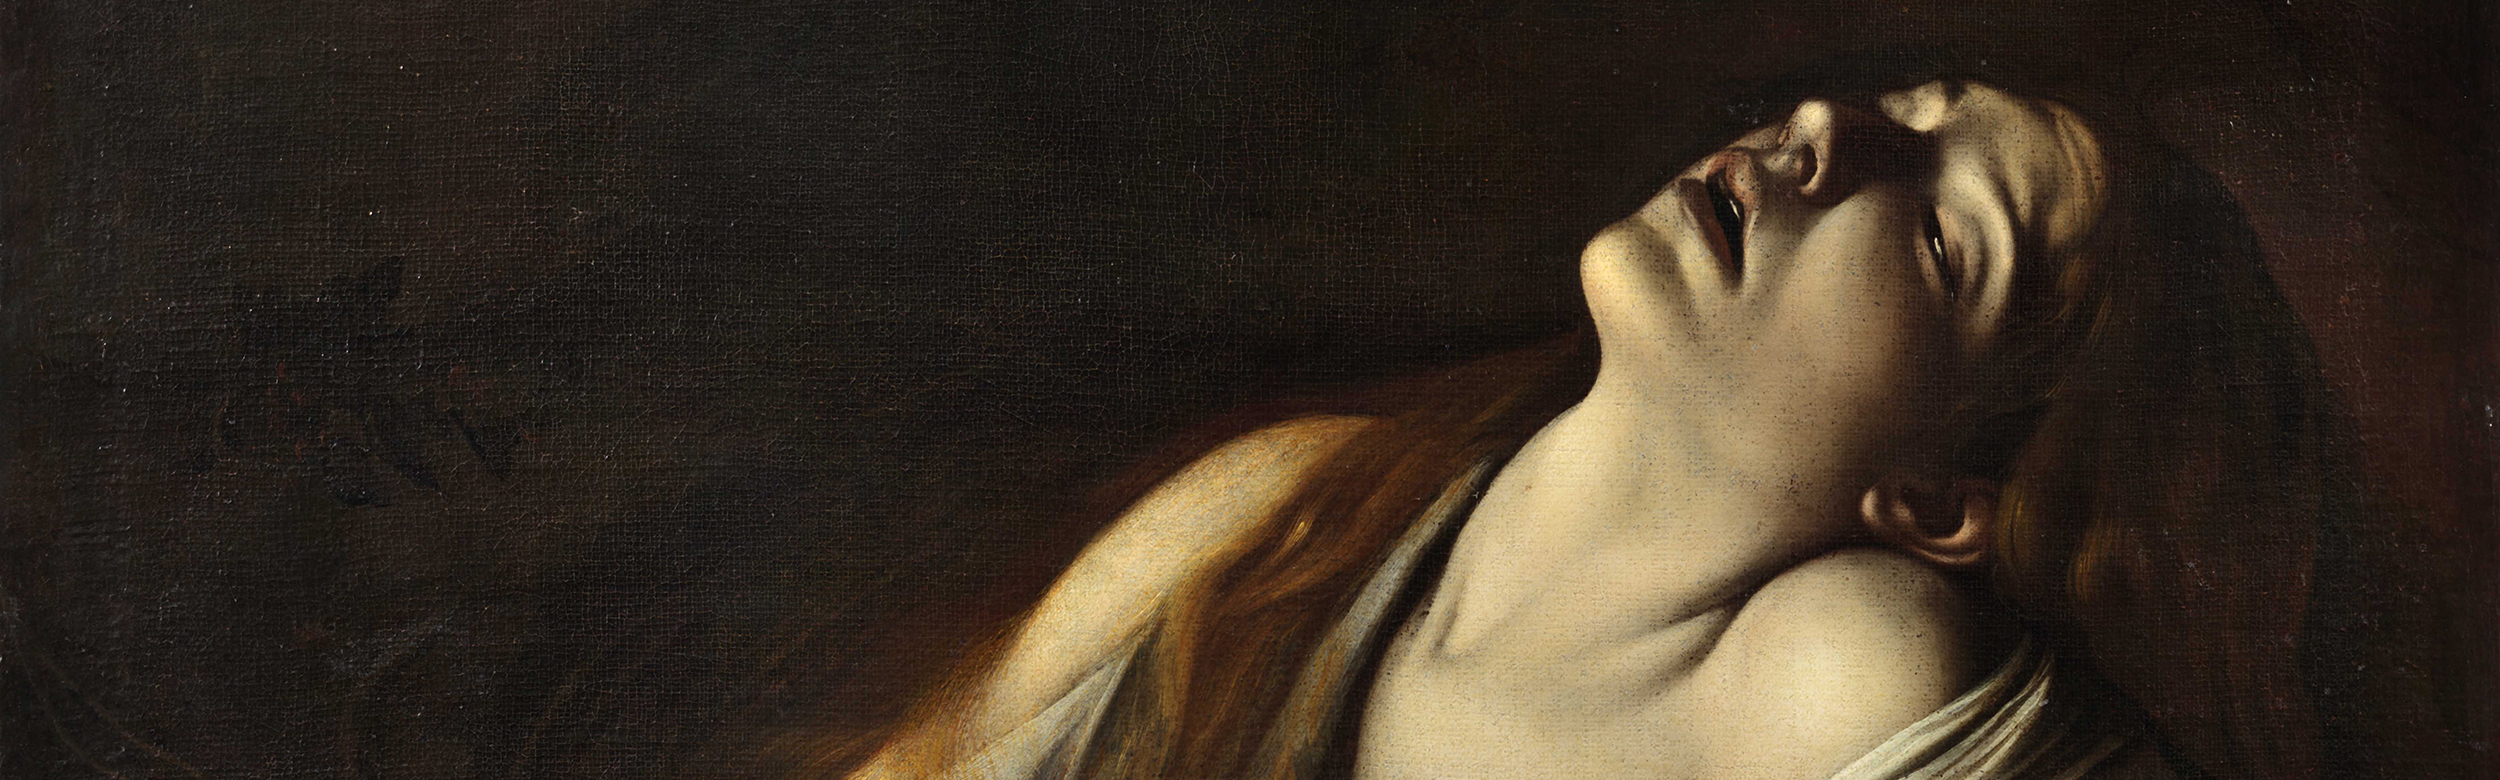 A subasta el retrato perdido de Olimpia Maidalchini de Velázquez